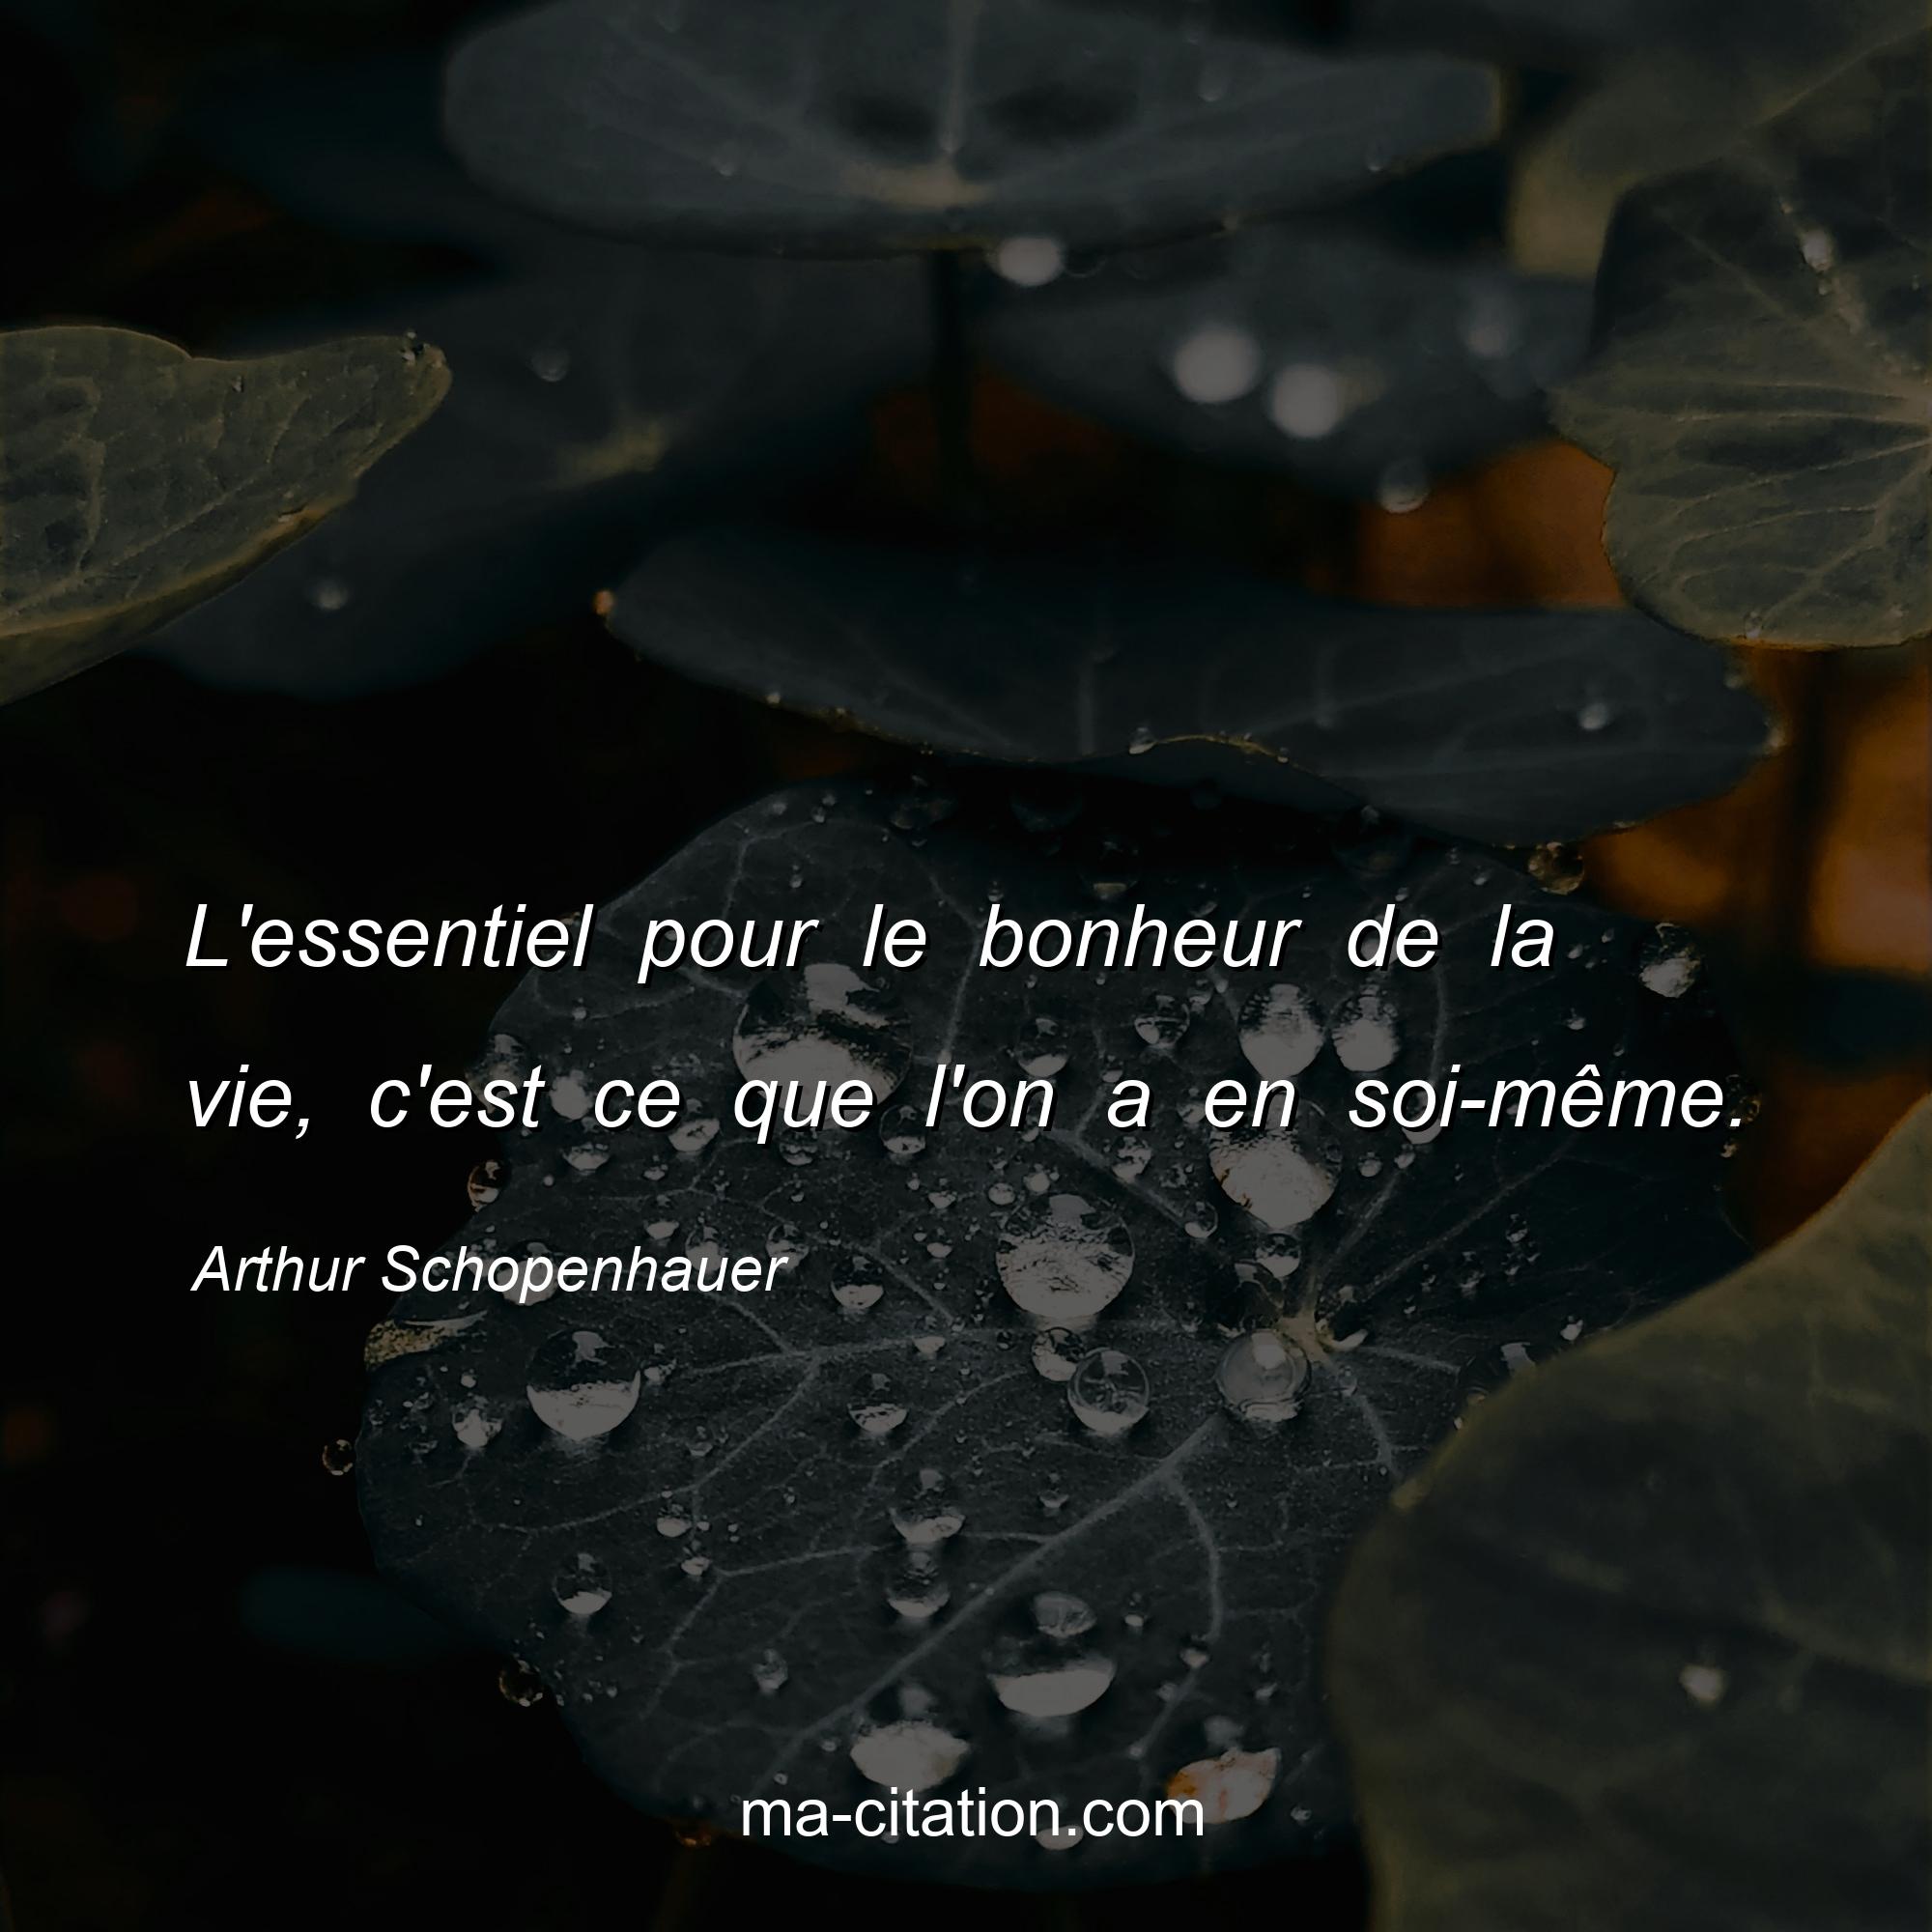 Arthur Schopenhauer : L'essentiel pour le bonheur de la vie, c'est ce que l'on a en soi-même.